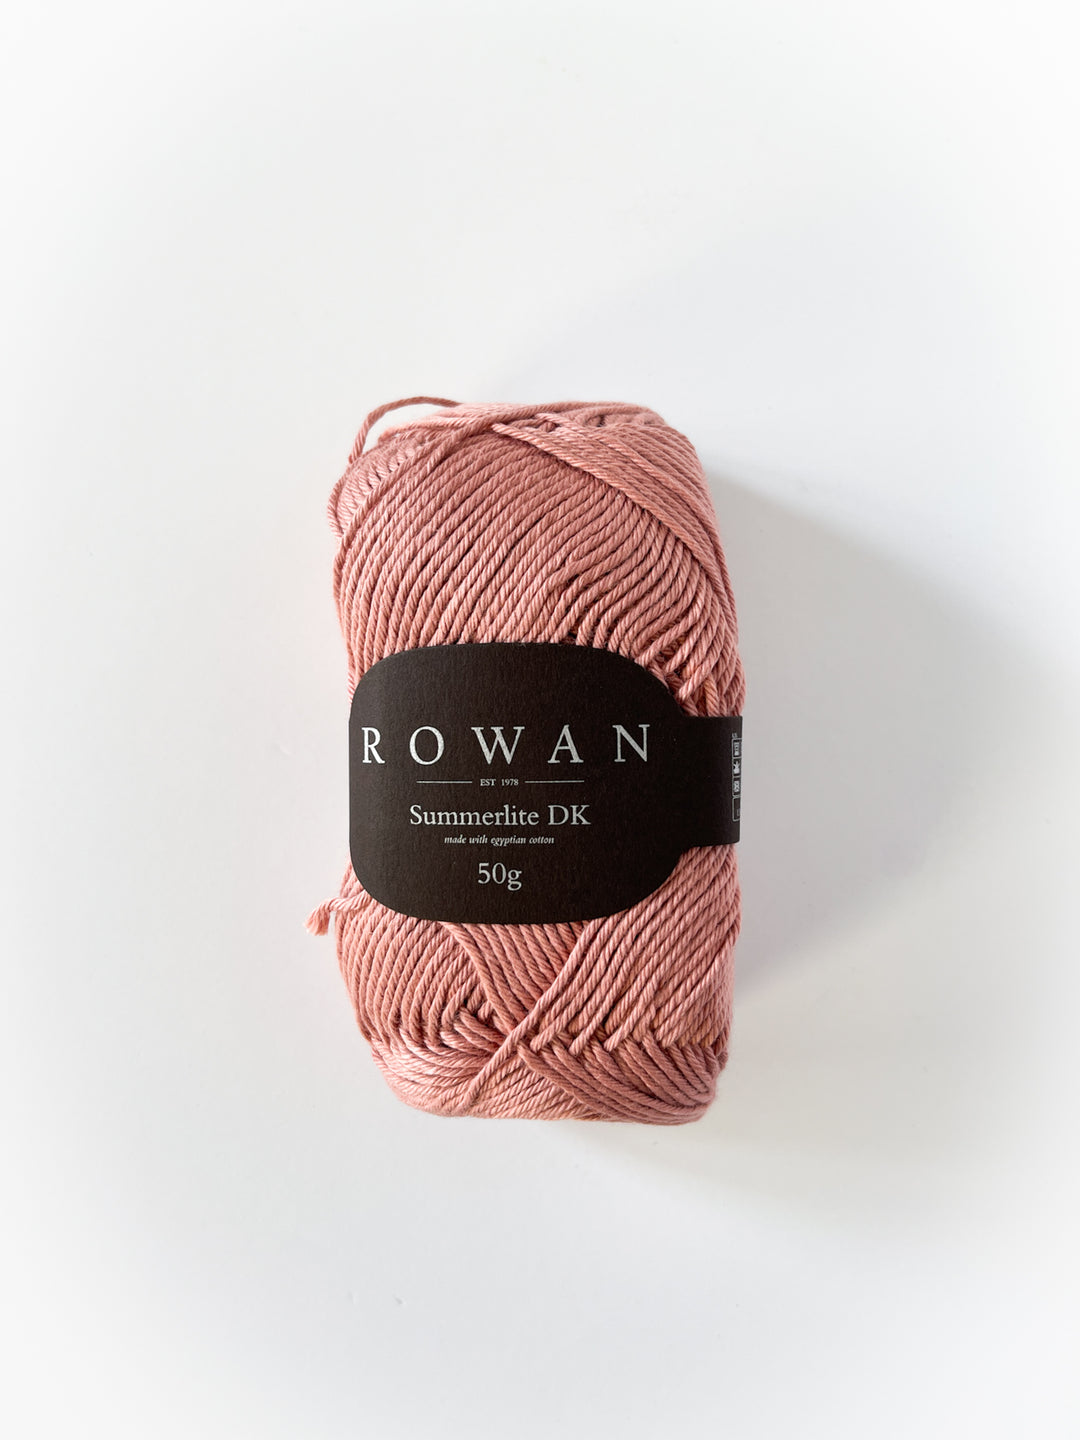 Rowan Summerlite DK Cotton